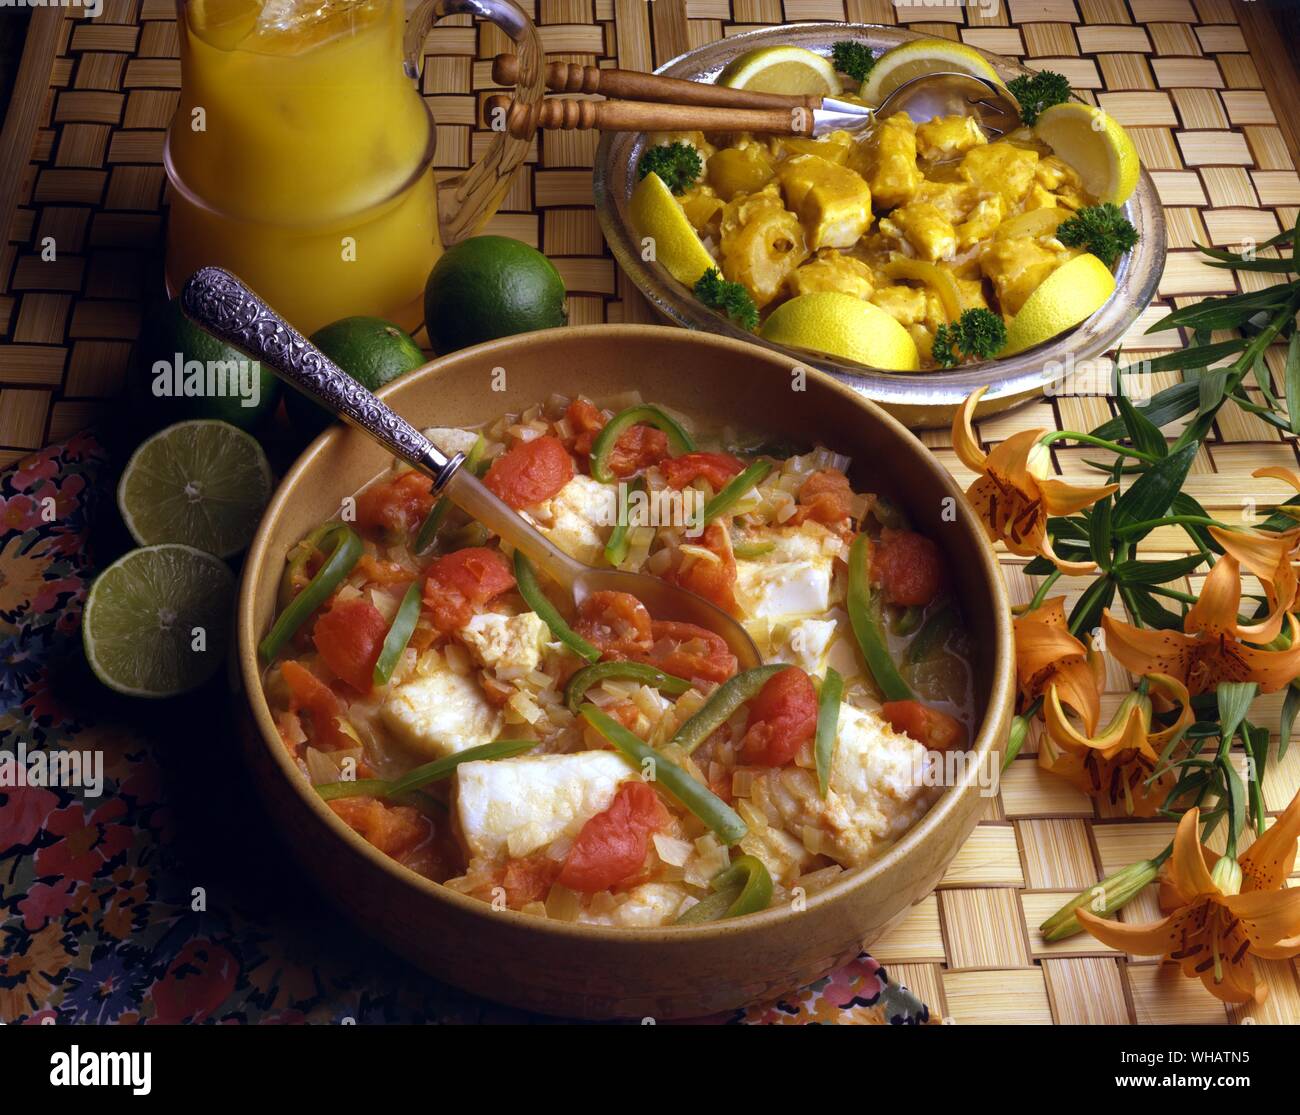 Internationale Küche. Top, eingelegte Fisch.. Ingelegde, Südafrika.. Unten, Heilbutt in einer pikanten Sauce.. Cozumel, Mexiko. Stockfoto